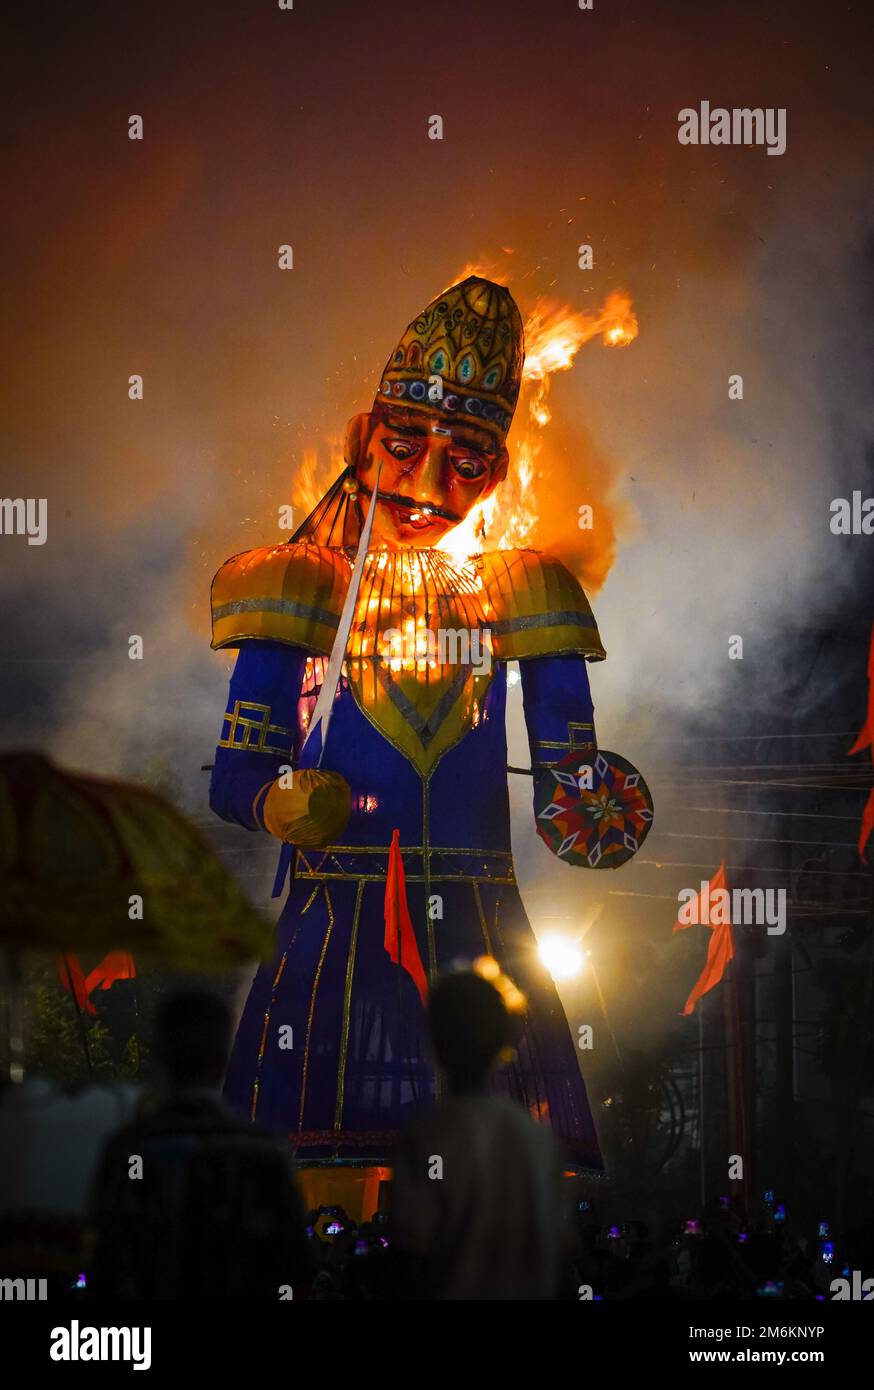 Ravan Dahan, selon la culture hindoue, les effigies de Ravana sont brûlées sur Vijayadashami, en Inde à de nombreux endroits, Ravana brûlant à dussehra festival, Banque D'Images